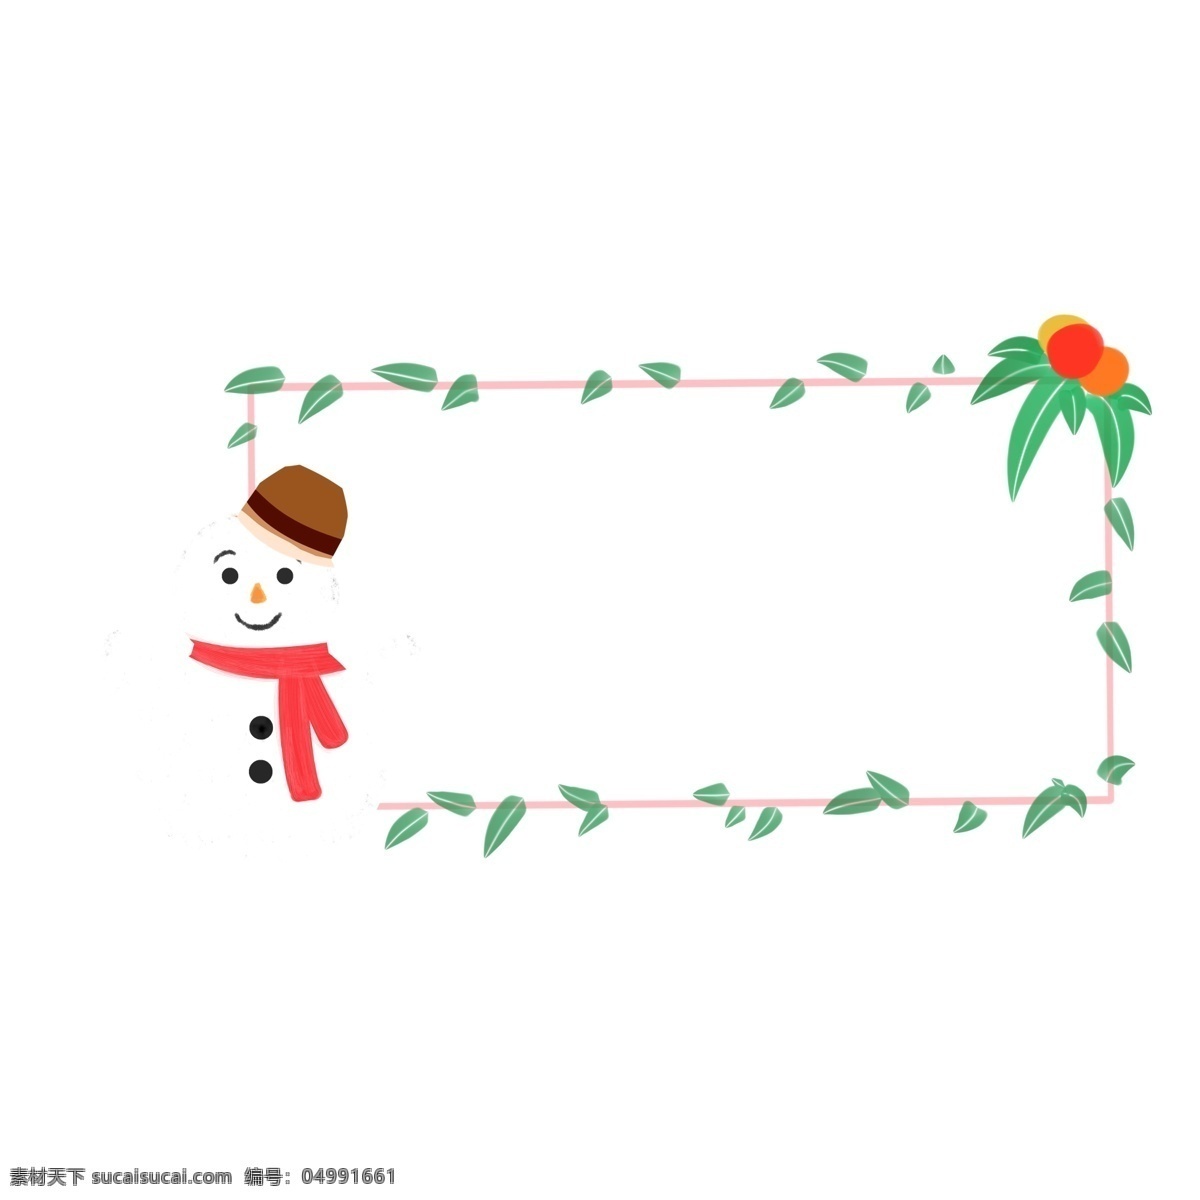 雪人 装饰 绿叶 边框 绿色叶子边框 雪人装饰边框 可爱雪人 圣诞节边框 长方形边框 植物边框